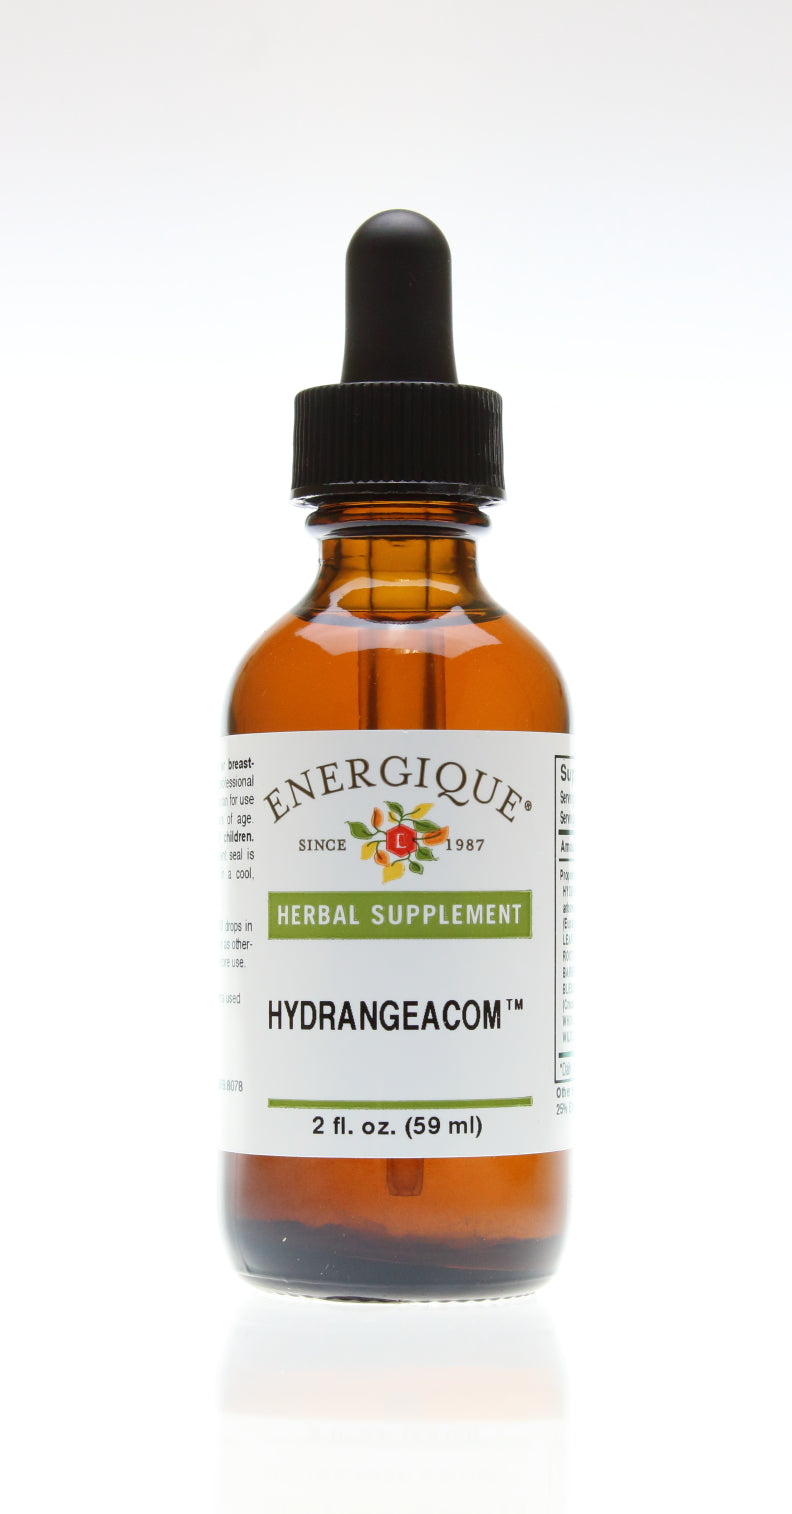 Hydrangeacom 2 oz by Energique